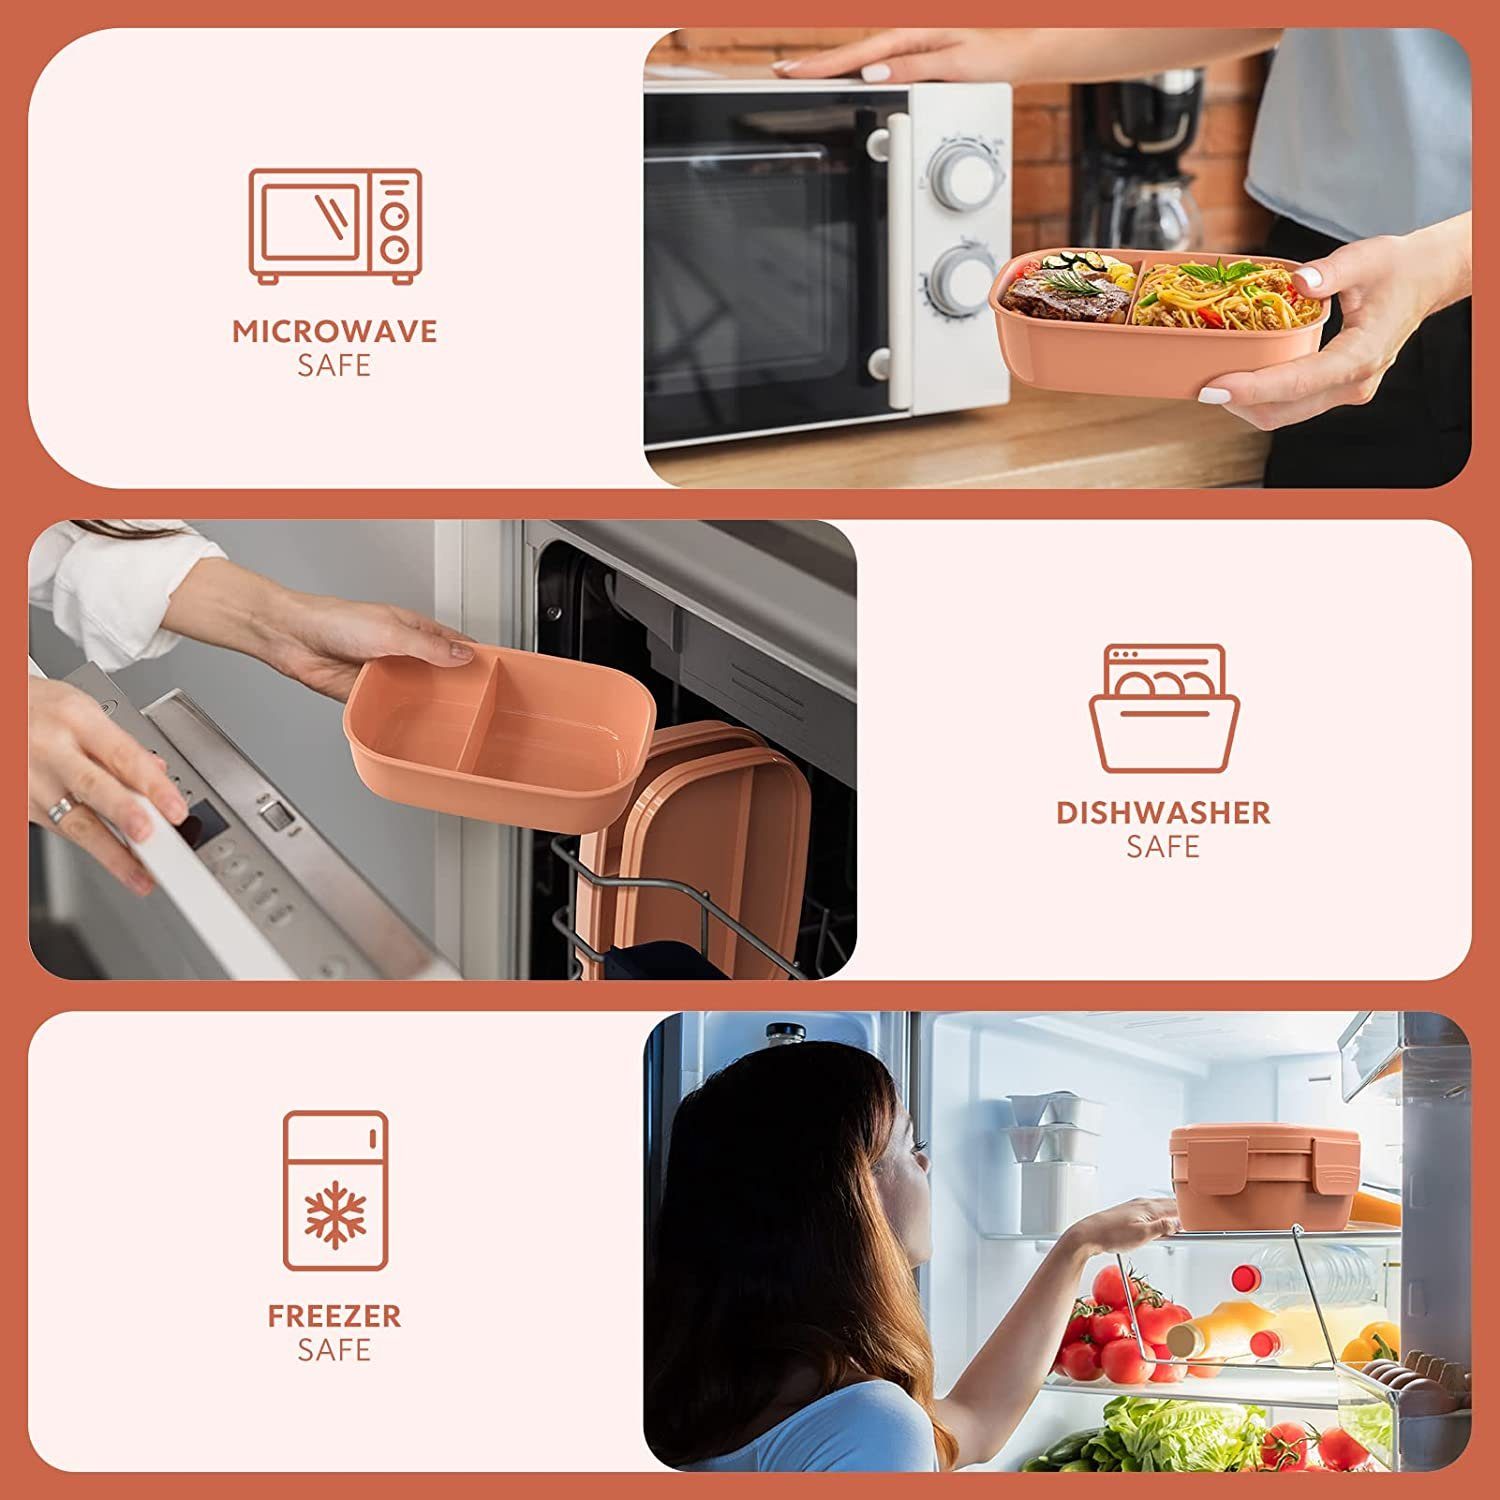 stapelbare für Welikera Lunchbox Lunchbox, Rosa Erwachsene, Bento-Lunchbehälter Bento-Box 3